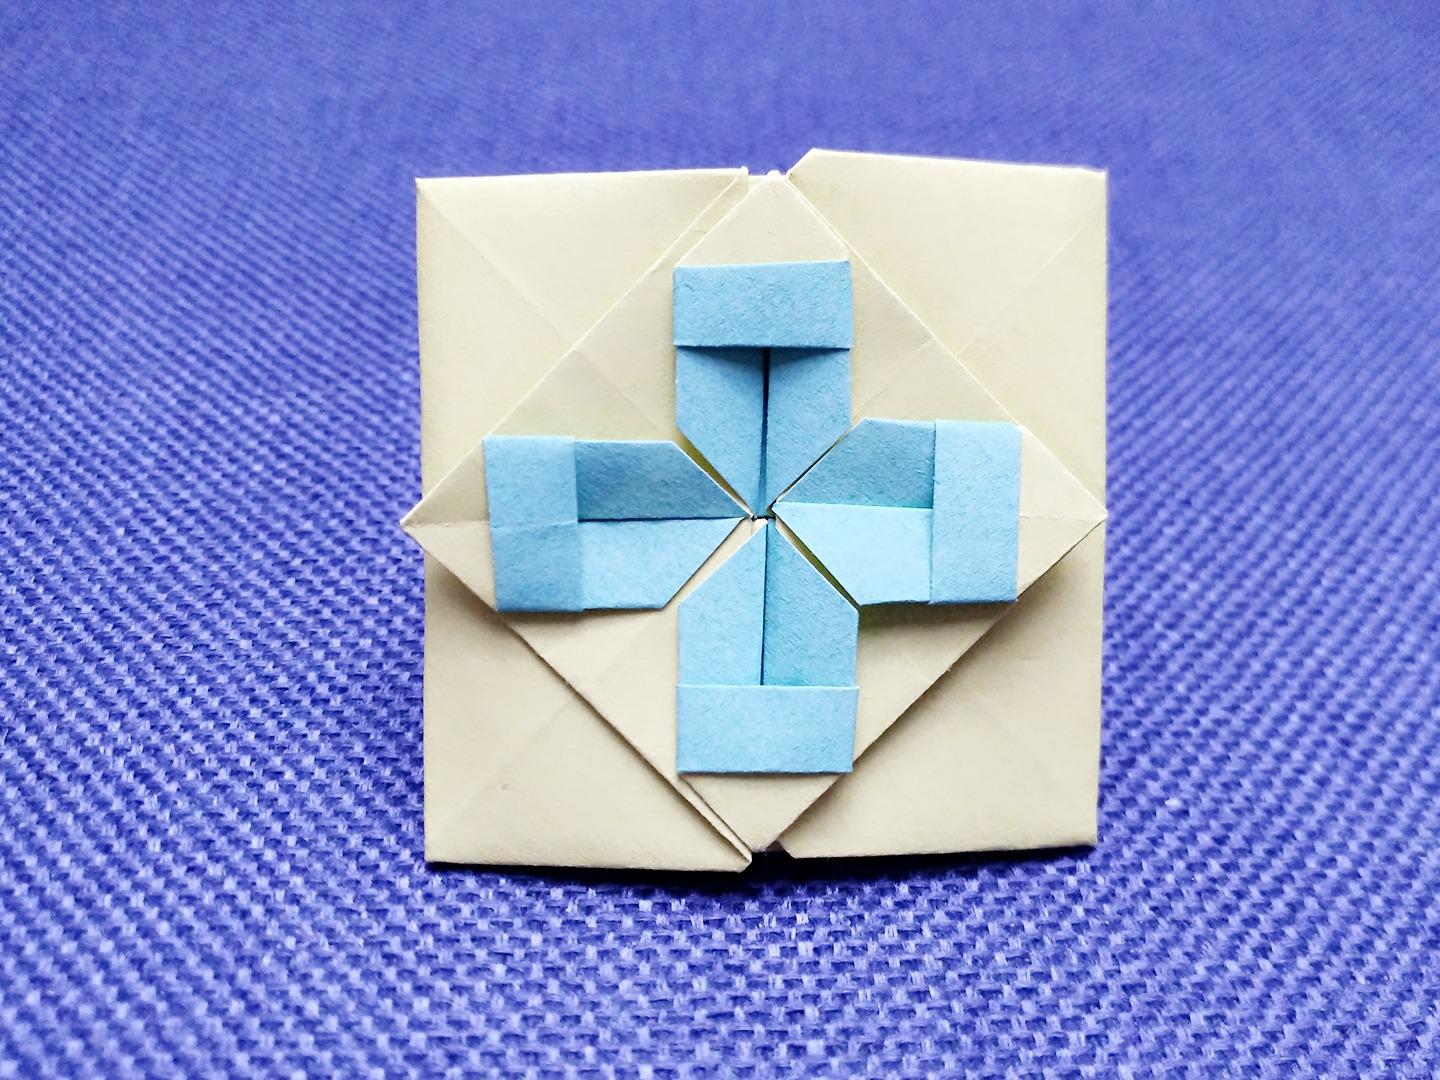 服务升级 3信封折纸教程之:长方形信封  01:36  来源:好看视频-信封